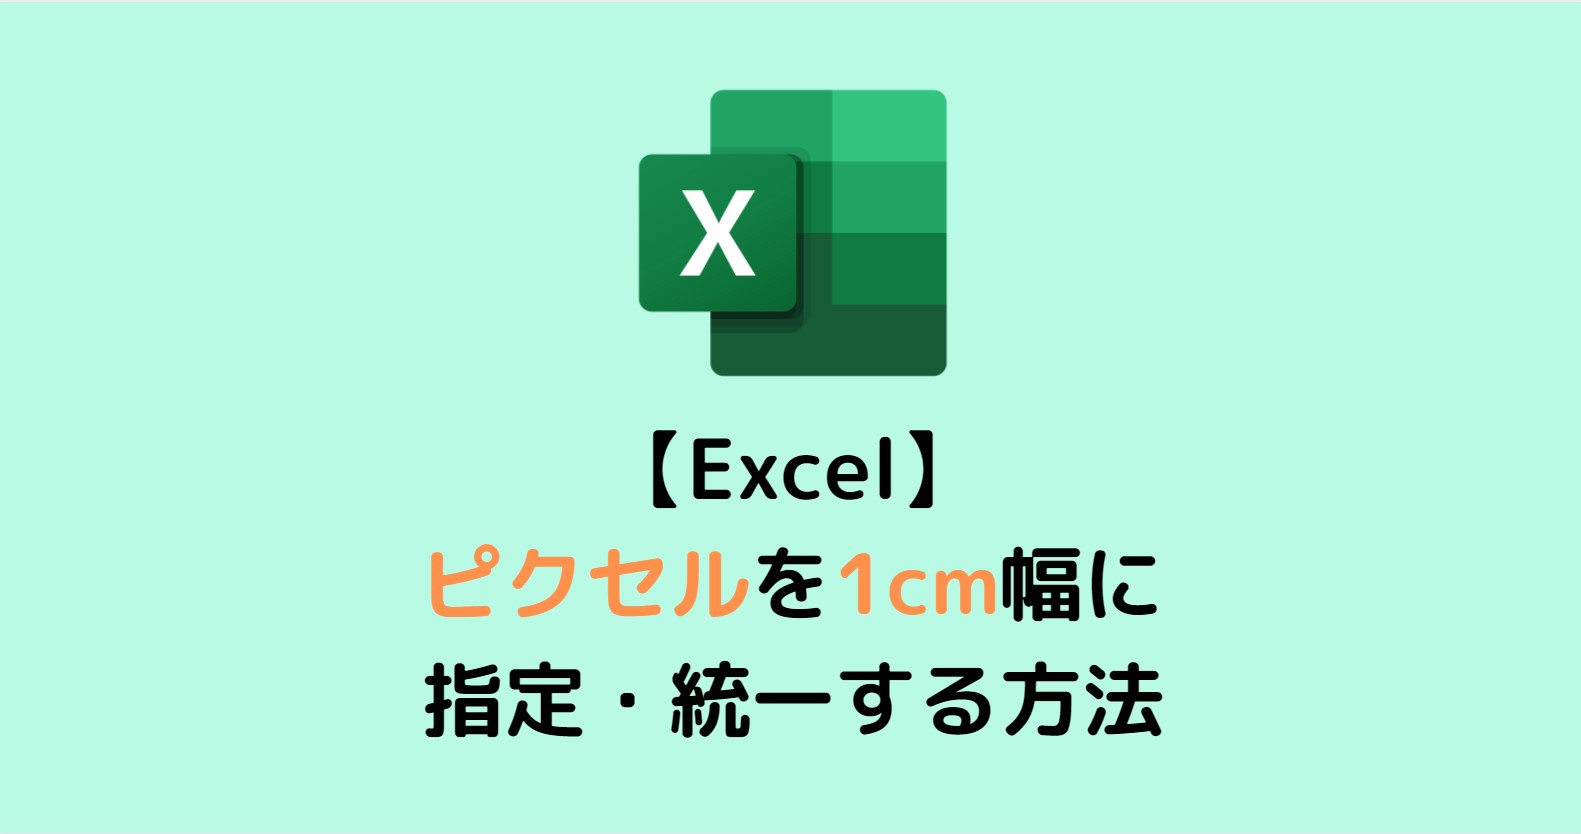 Excel エクセル ピクセルを1cm幅に指定 統一する方法 スタディインフラ